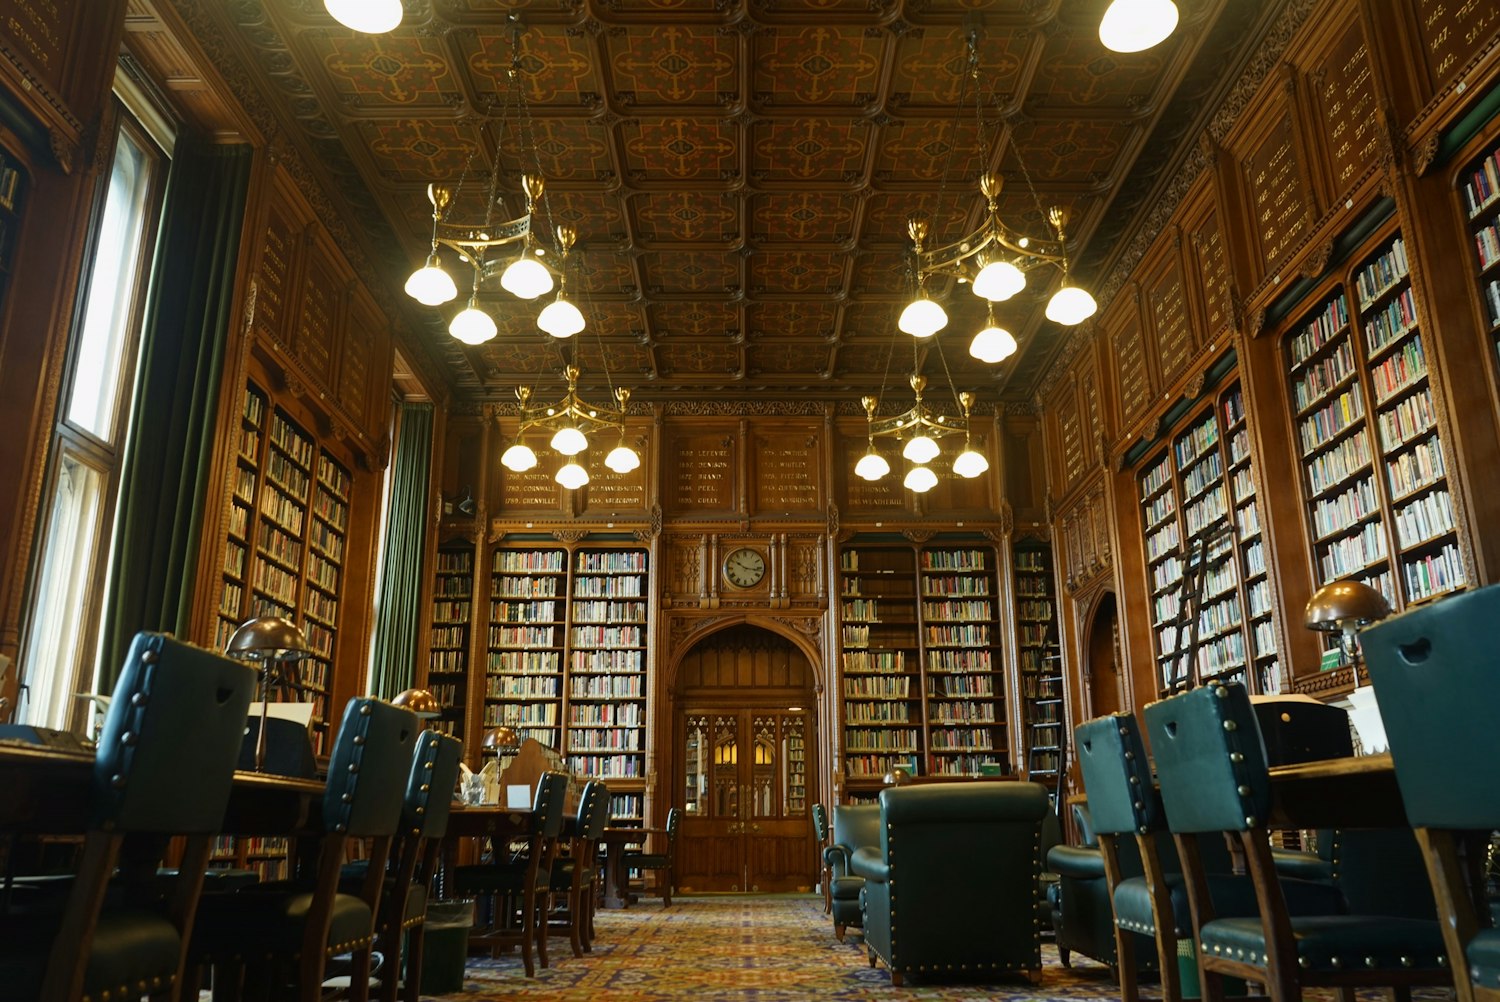 Static library. Вестминстерская библиотека в Лондоне. Библиотека во Дворце. Библиотека в особняке 17 век. Статические библиотеки.